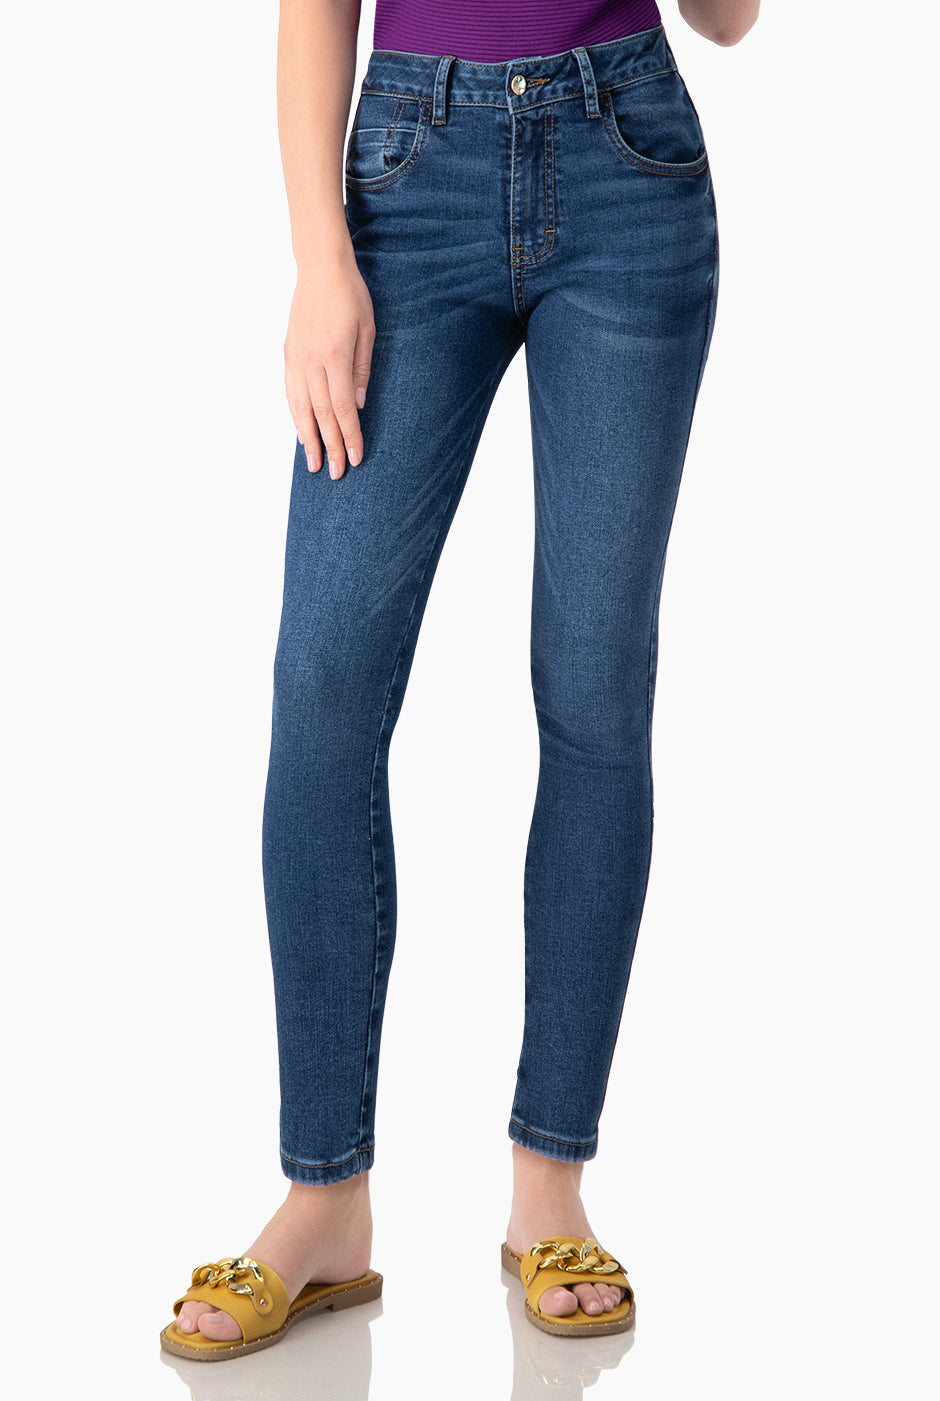 Jeans corte skinny con bolsillos